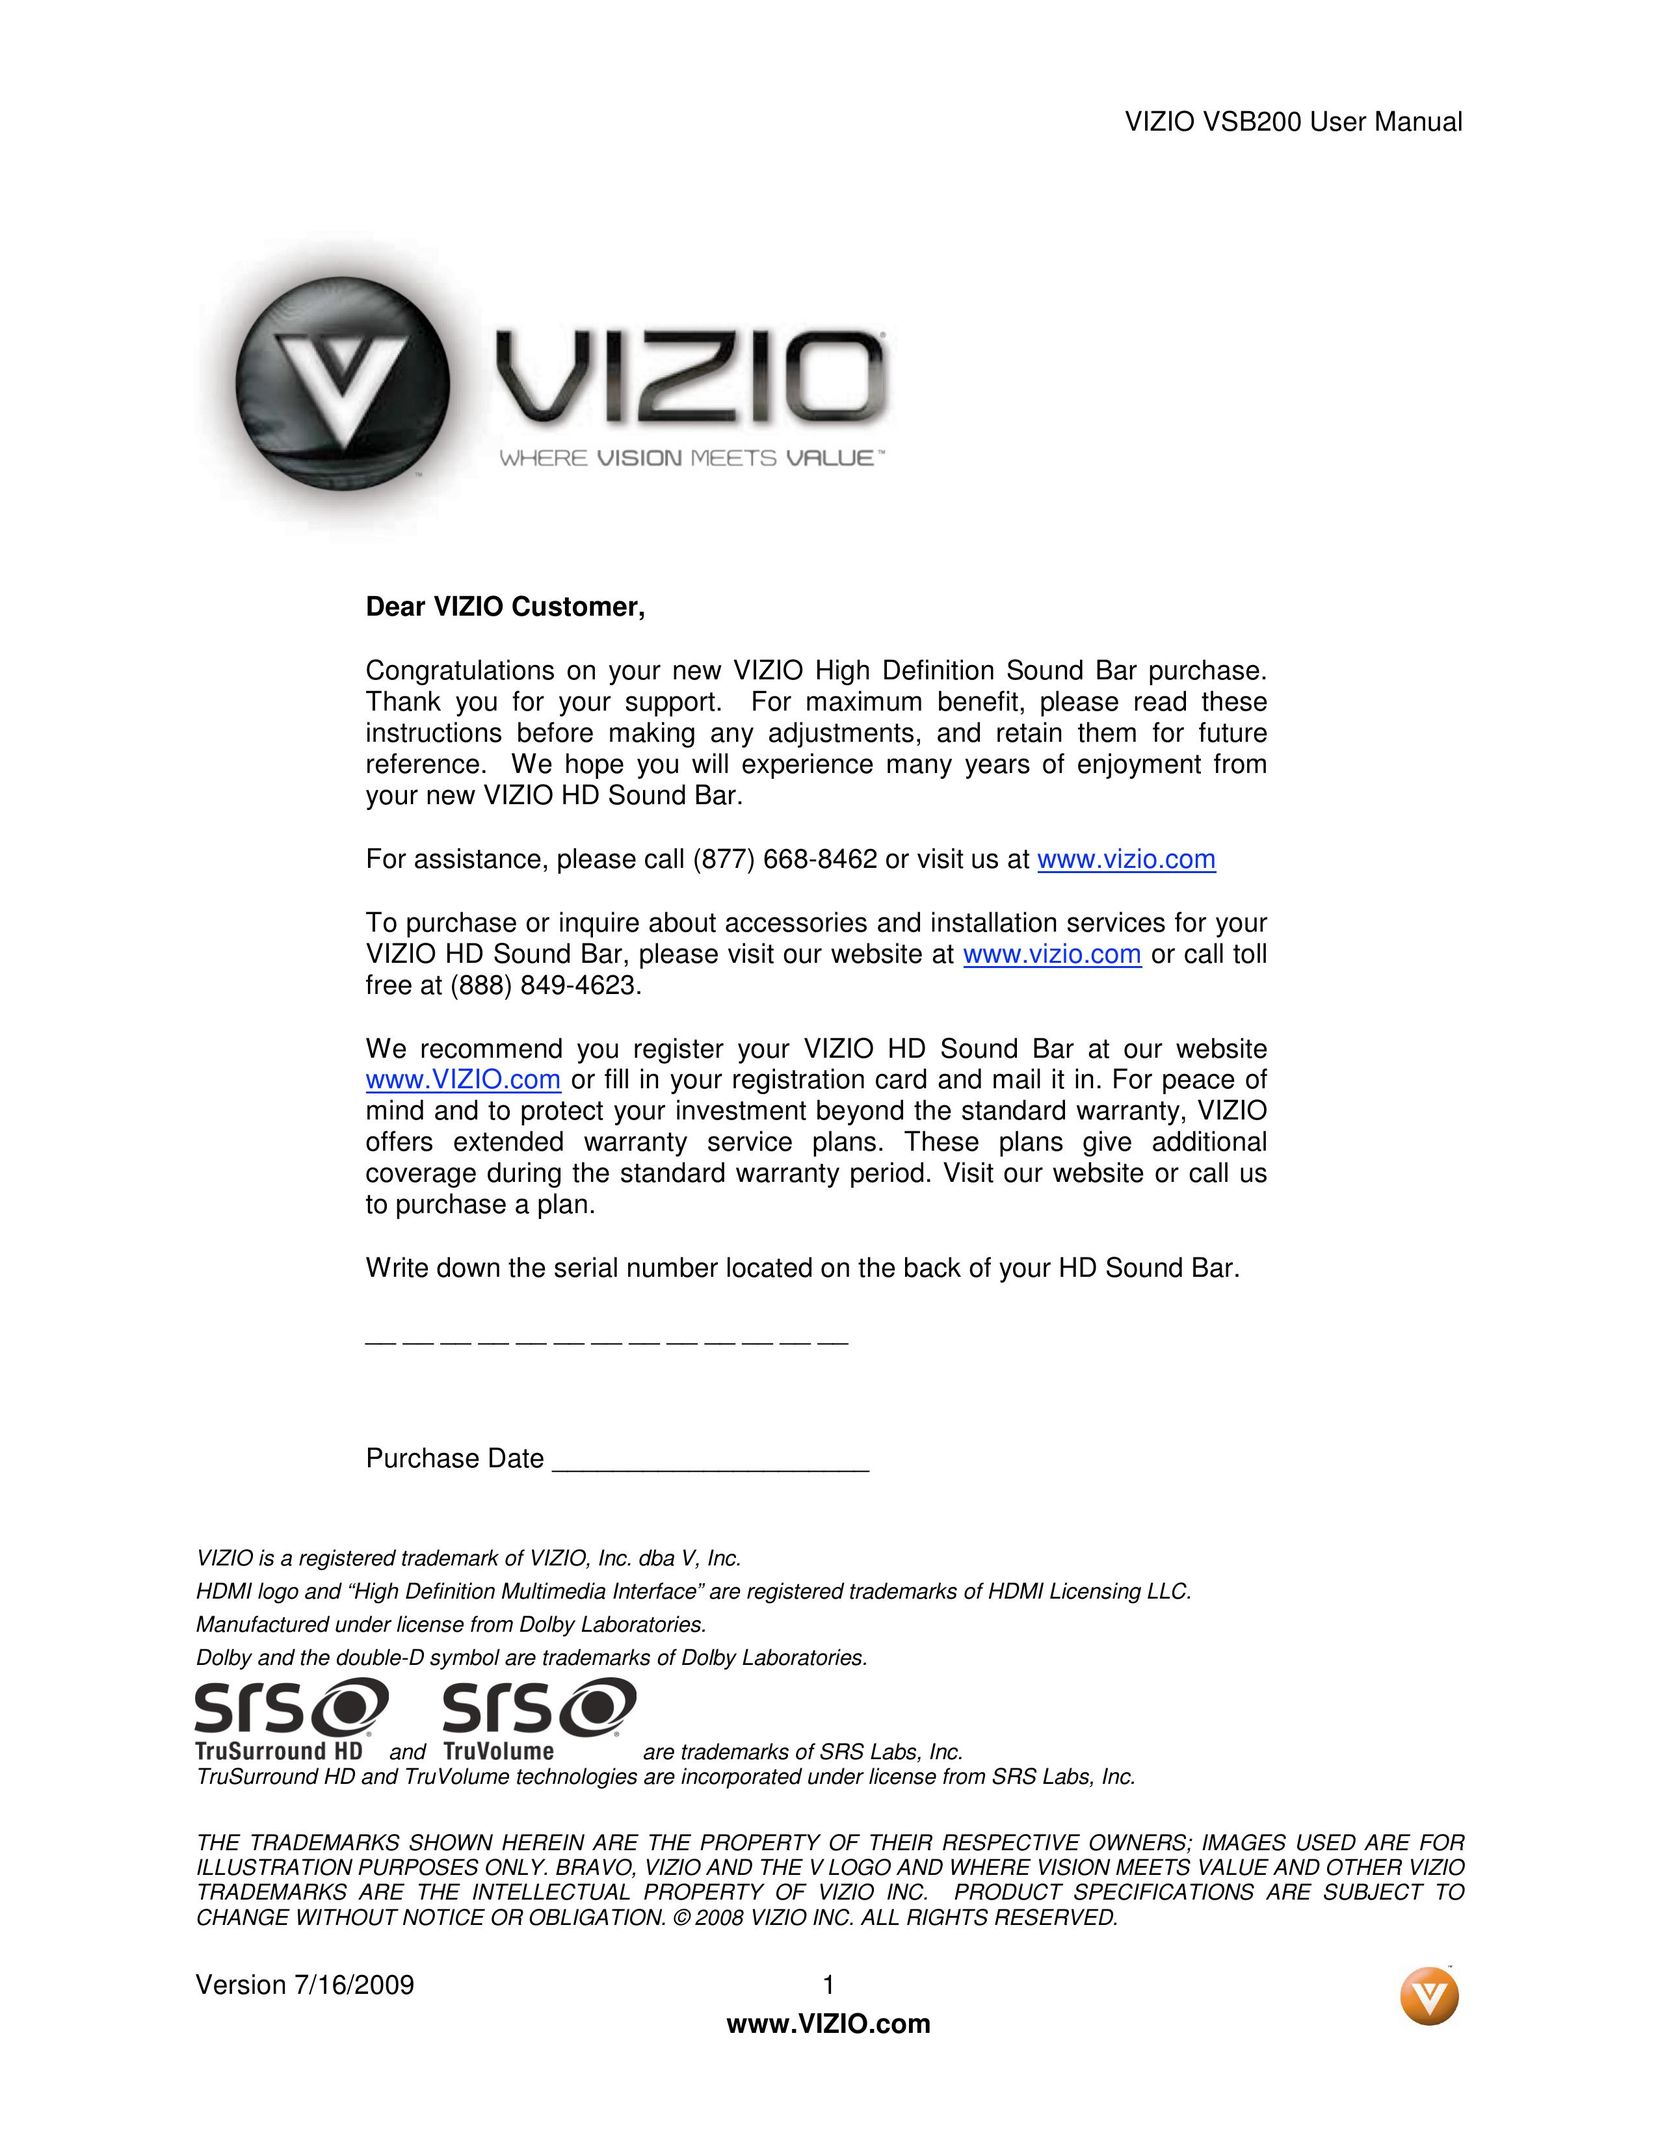 Vizio VSB200 Car Speaker User Manual